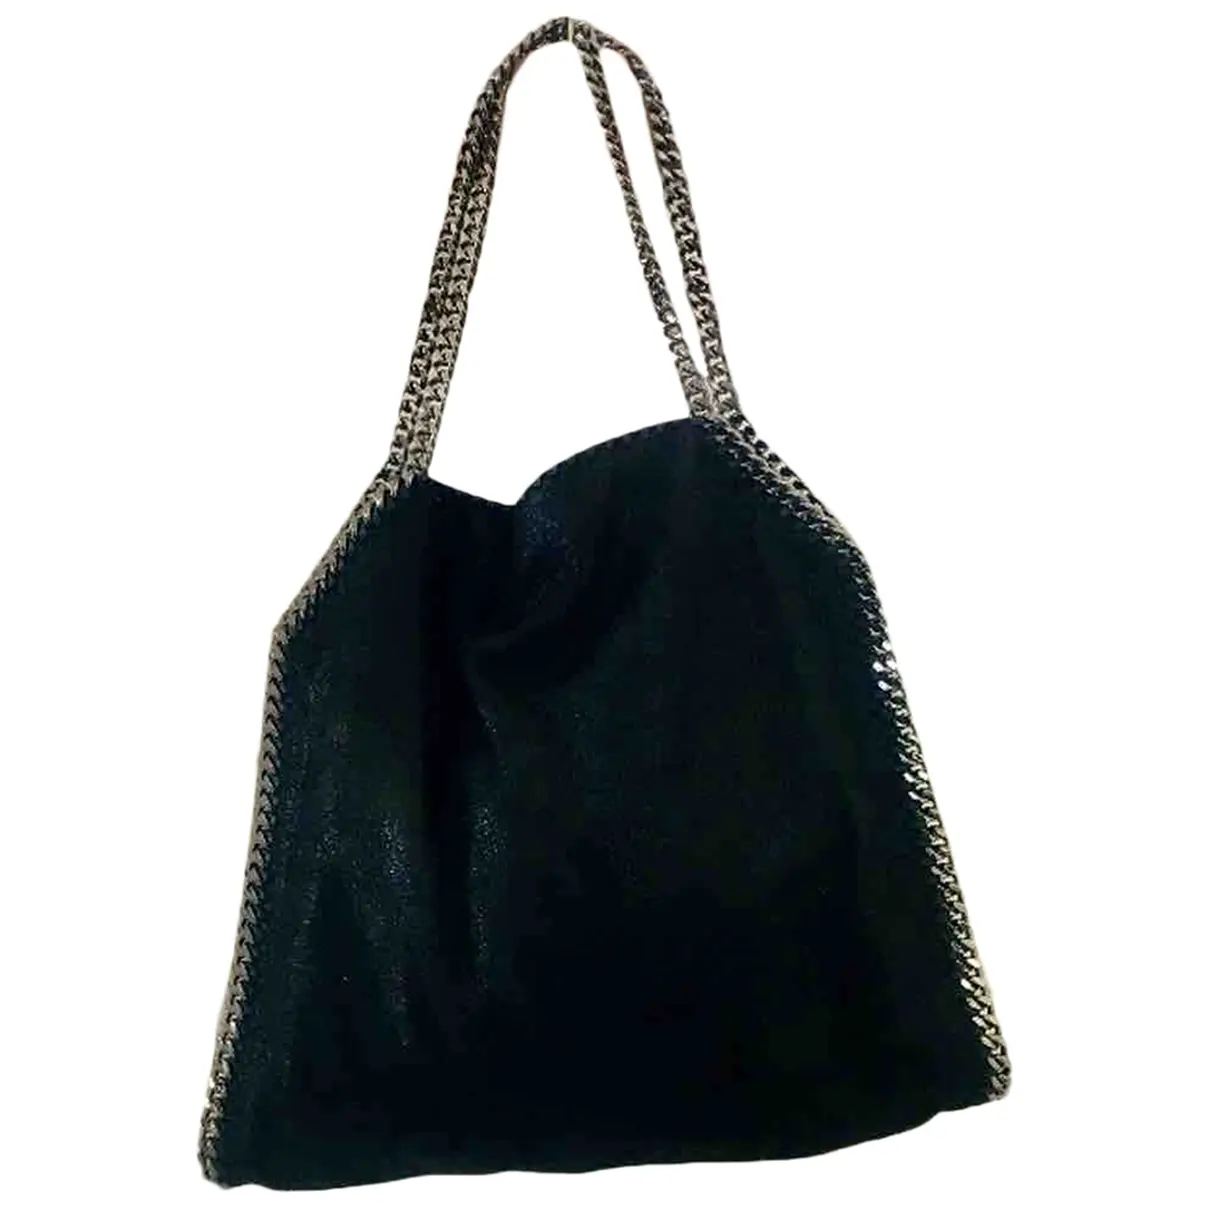 Falabella cloth handbag Stella McCartney